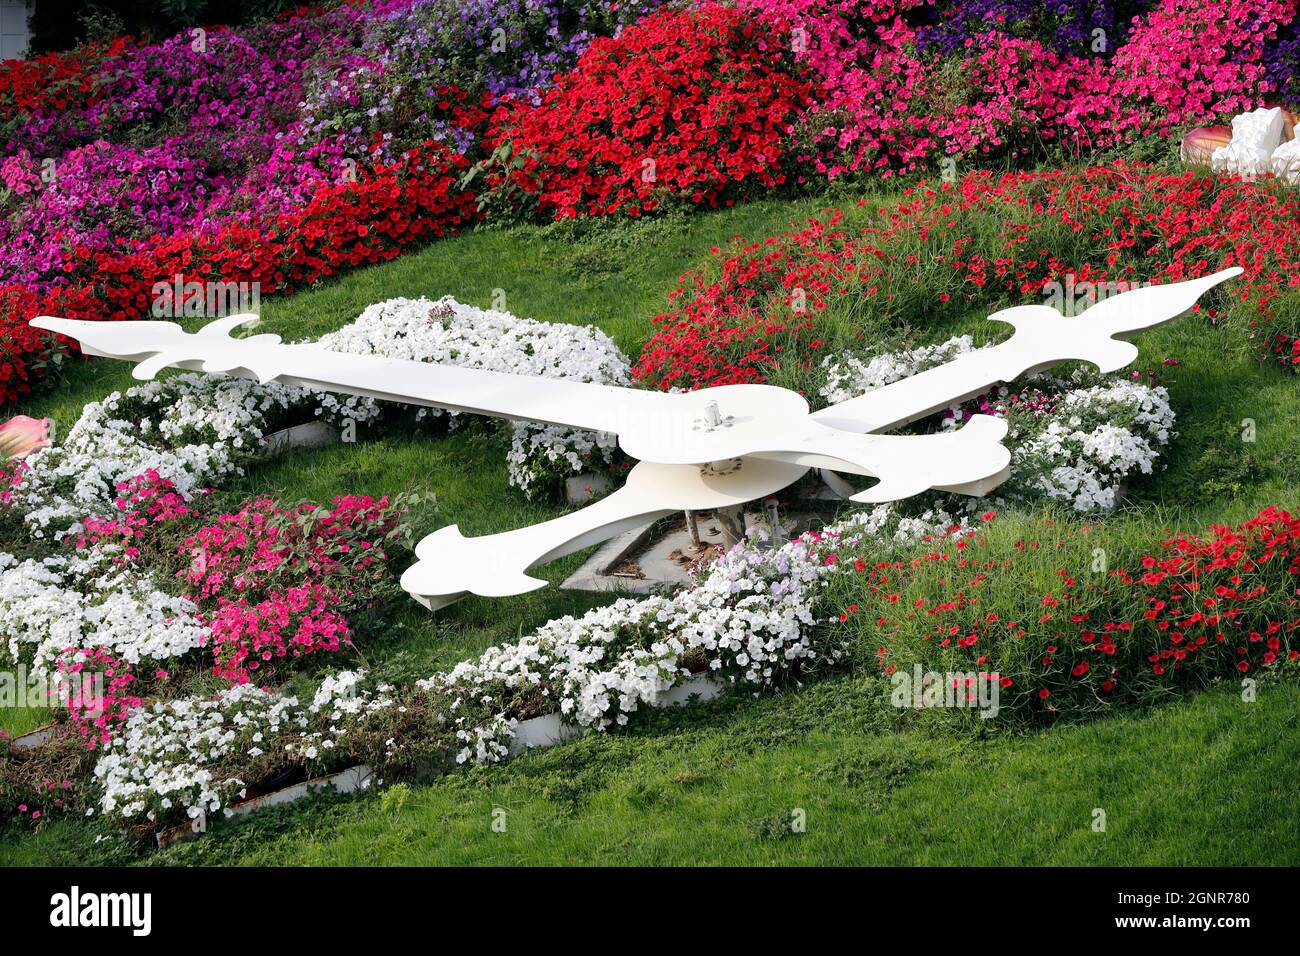 Dubai Miracle Garden, ein Blumengarten in Dubailand. Uhr mit leuchtendem Blumenmuster. Dubai. Vereinigte Arabische Emirate. Stockfoto